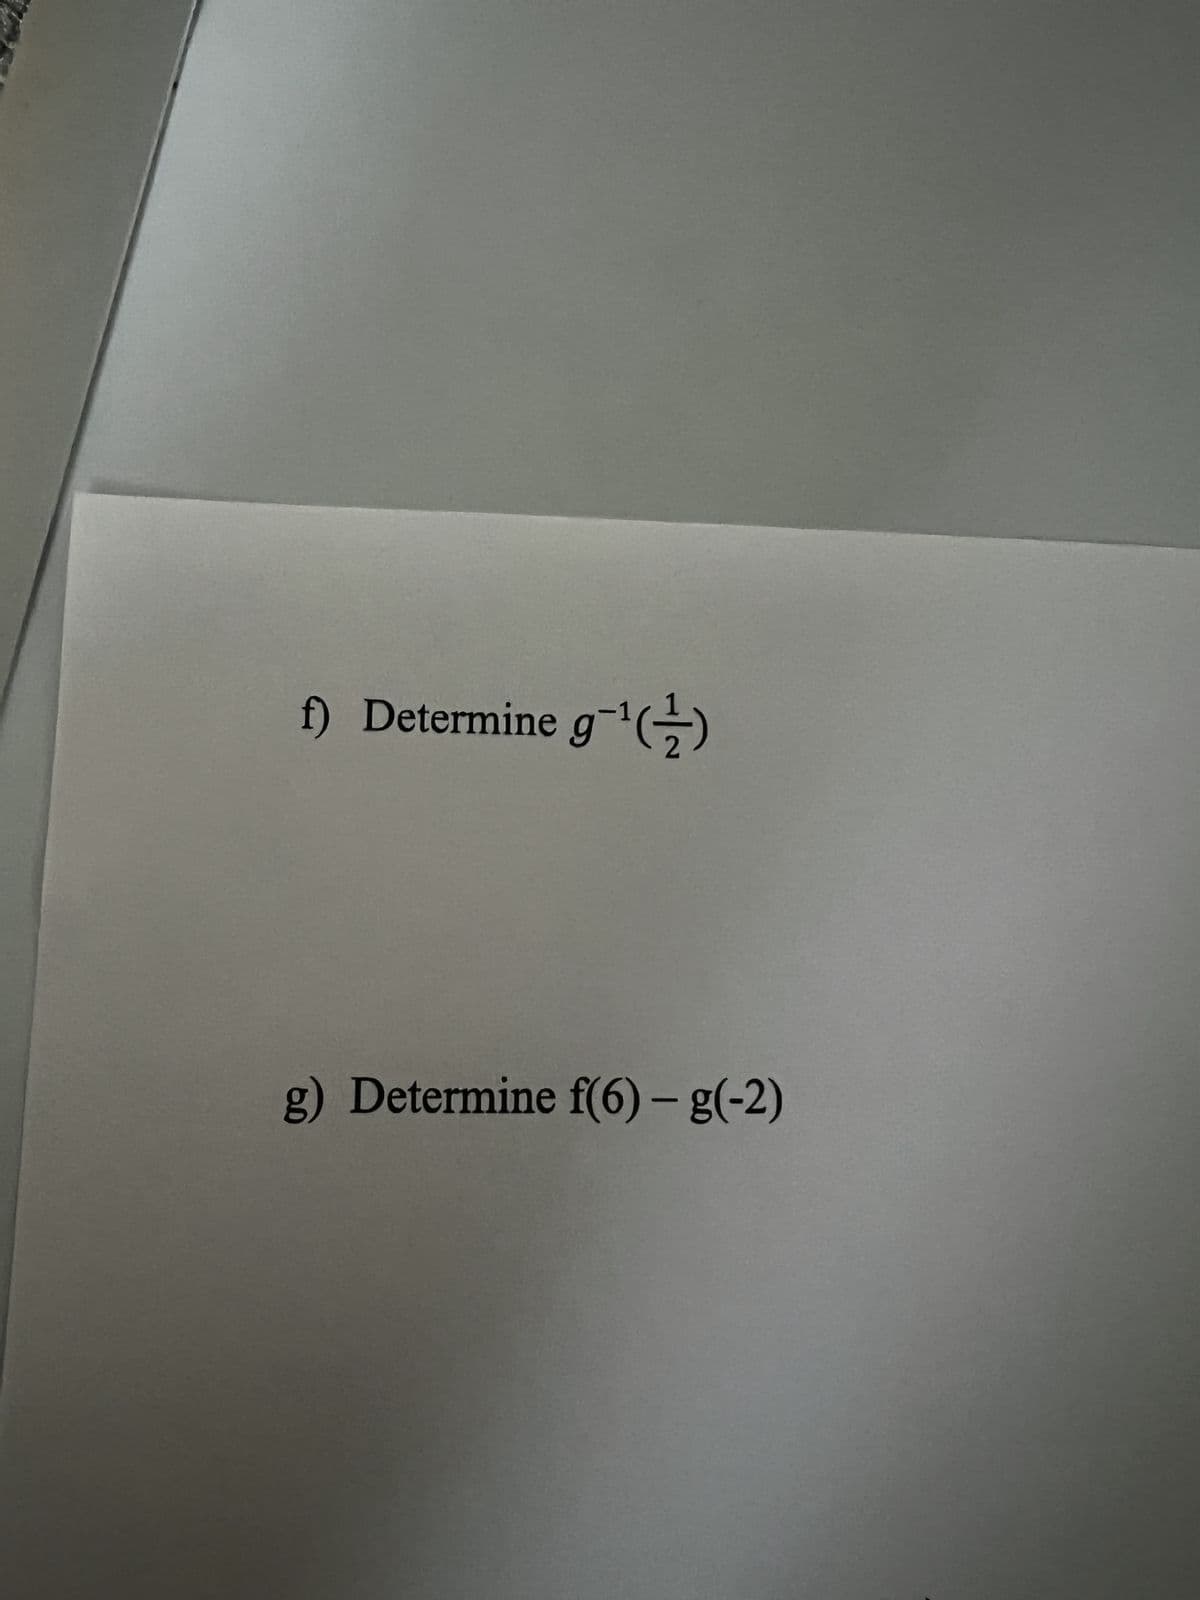 f) Determine g-¹(2)
g) Determine f(6) - g(-2)